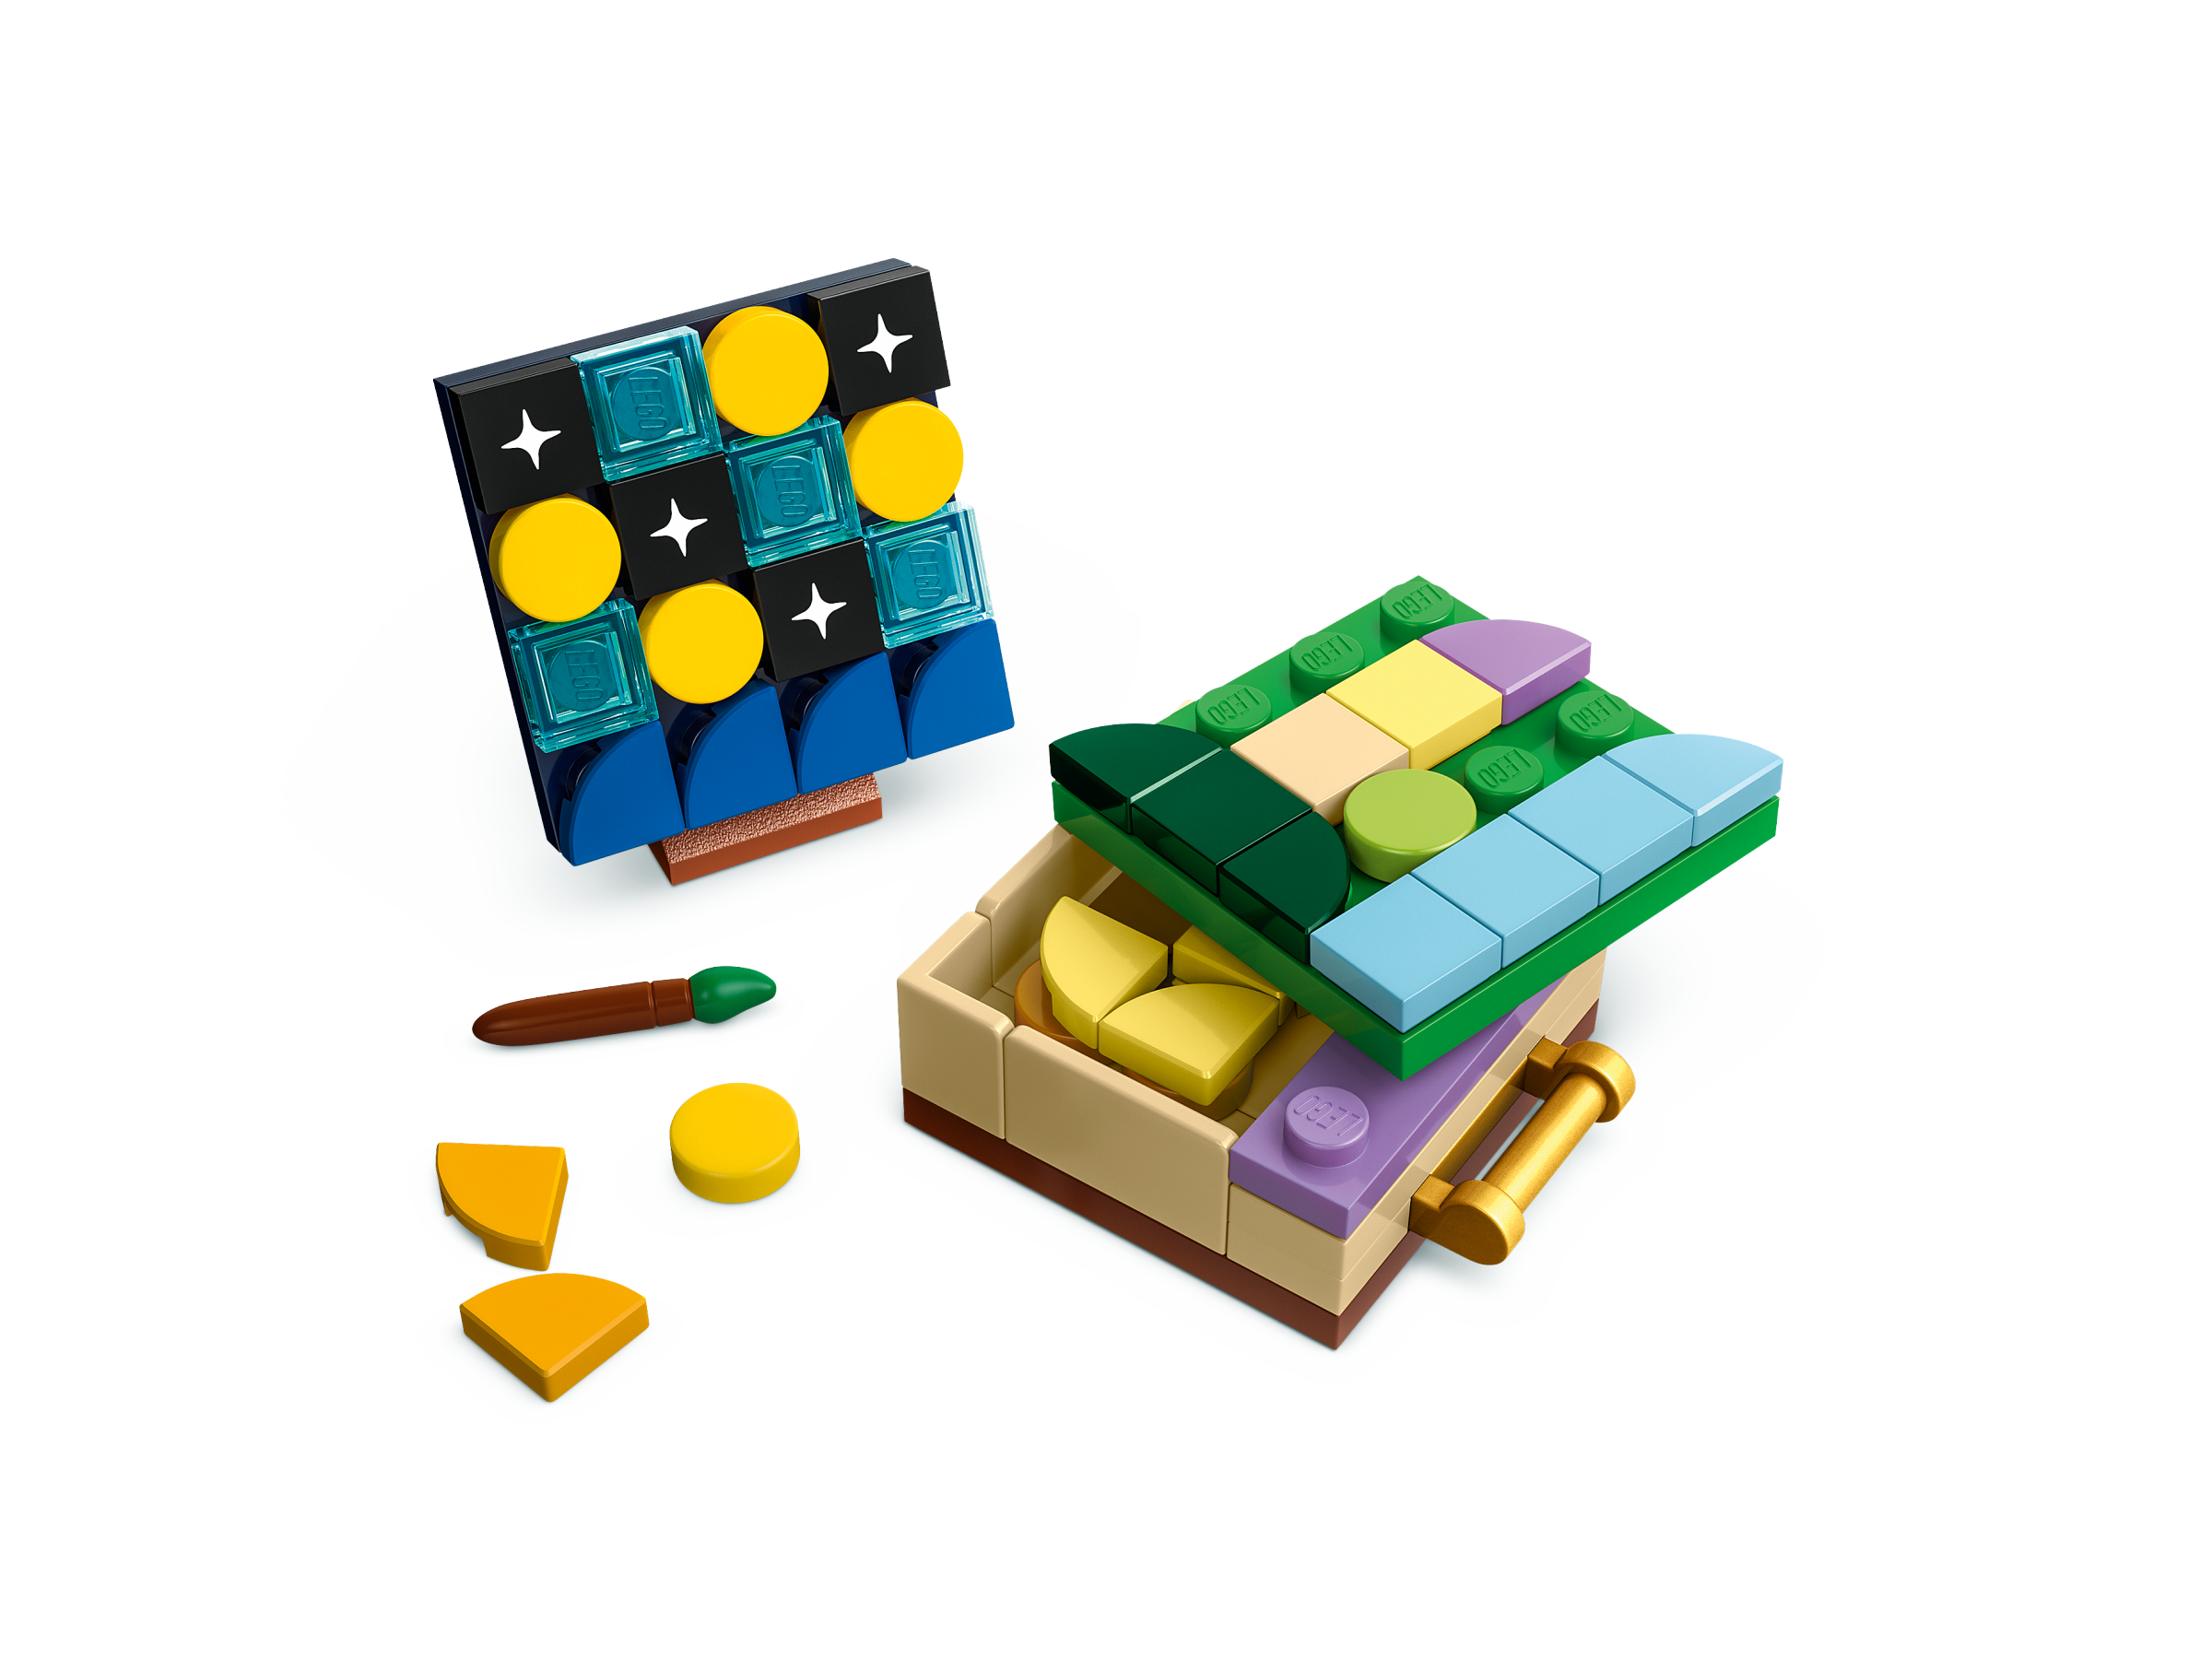 LEGO® 43241 Torre de Rapunzel y El Patito Fr.. - ToyPro